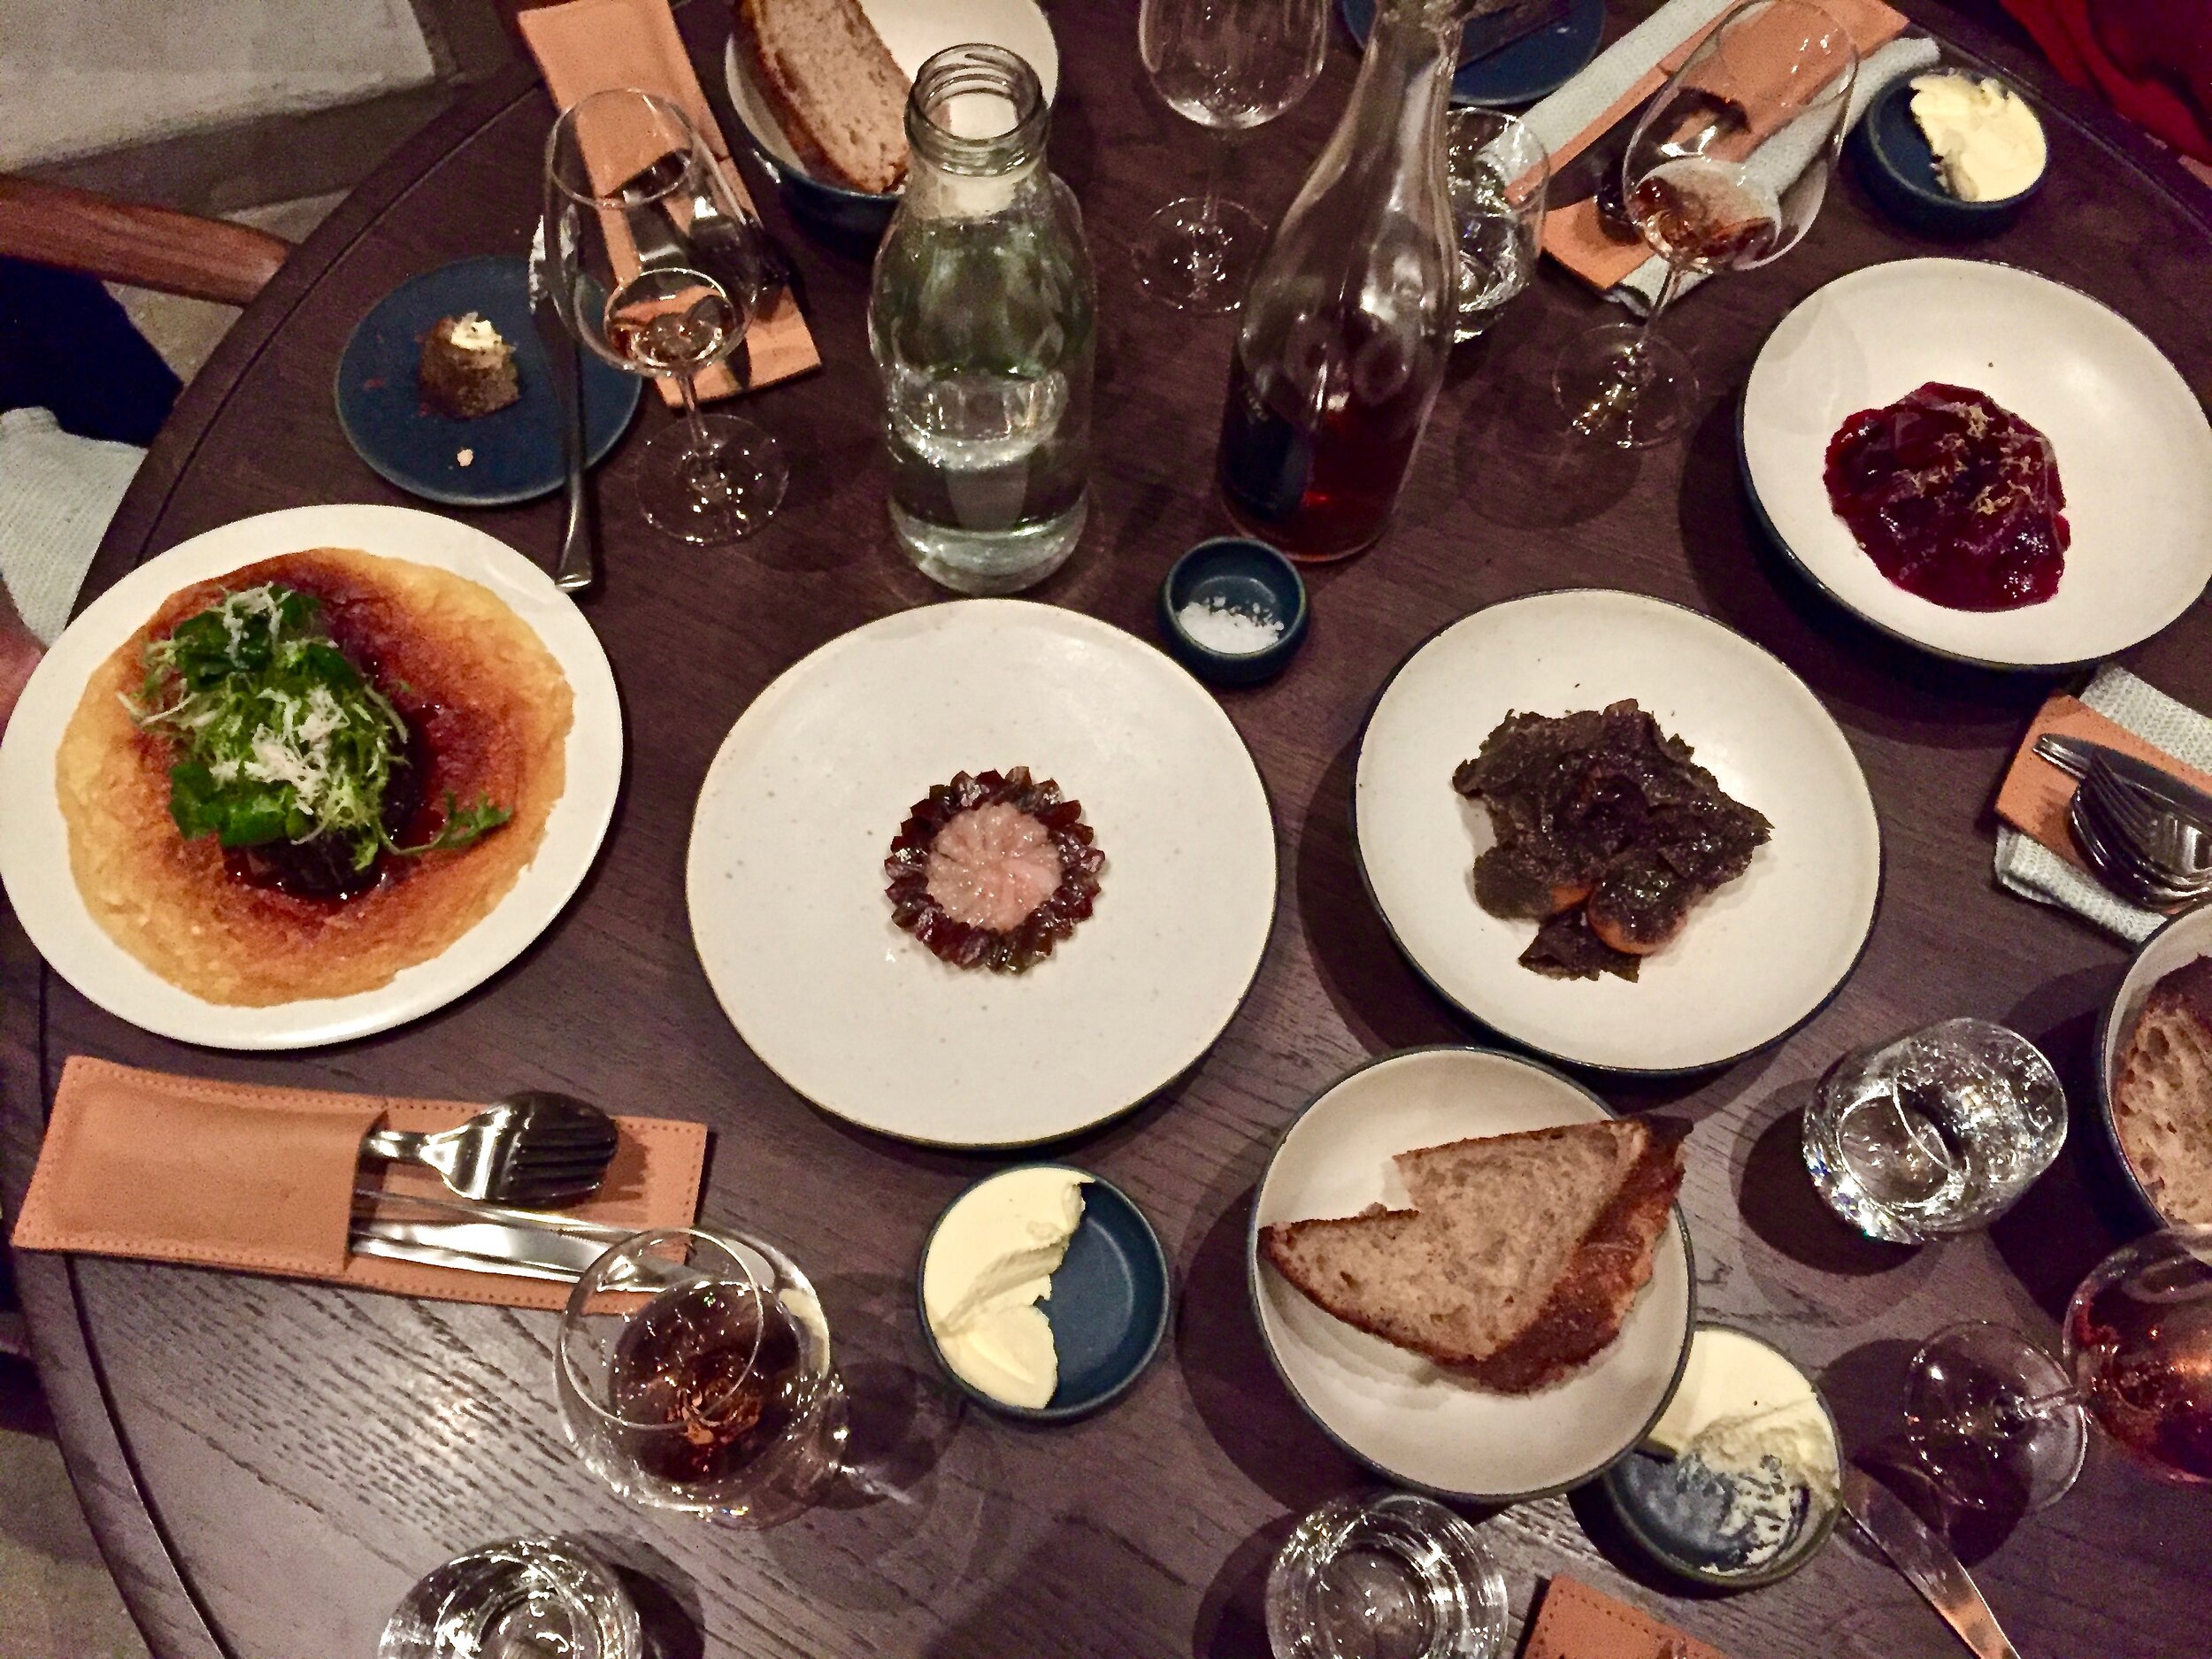 Our table at Restaurant 108 in Copenhagen, Denmark